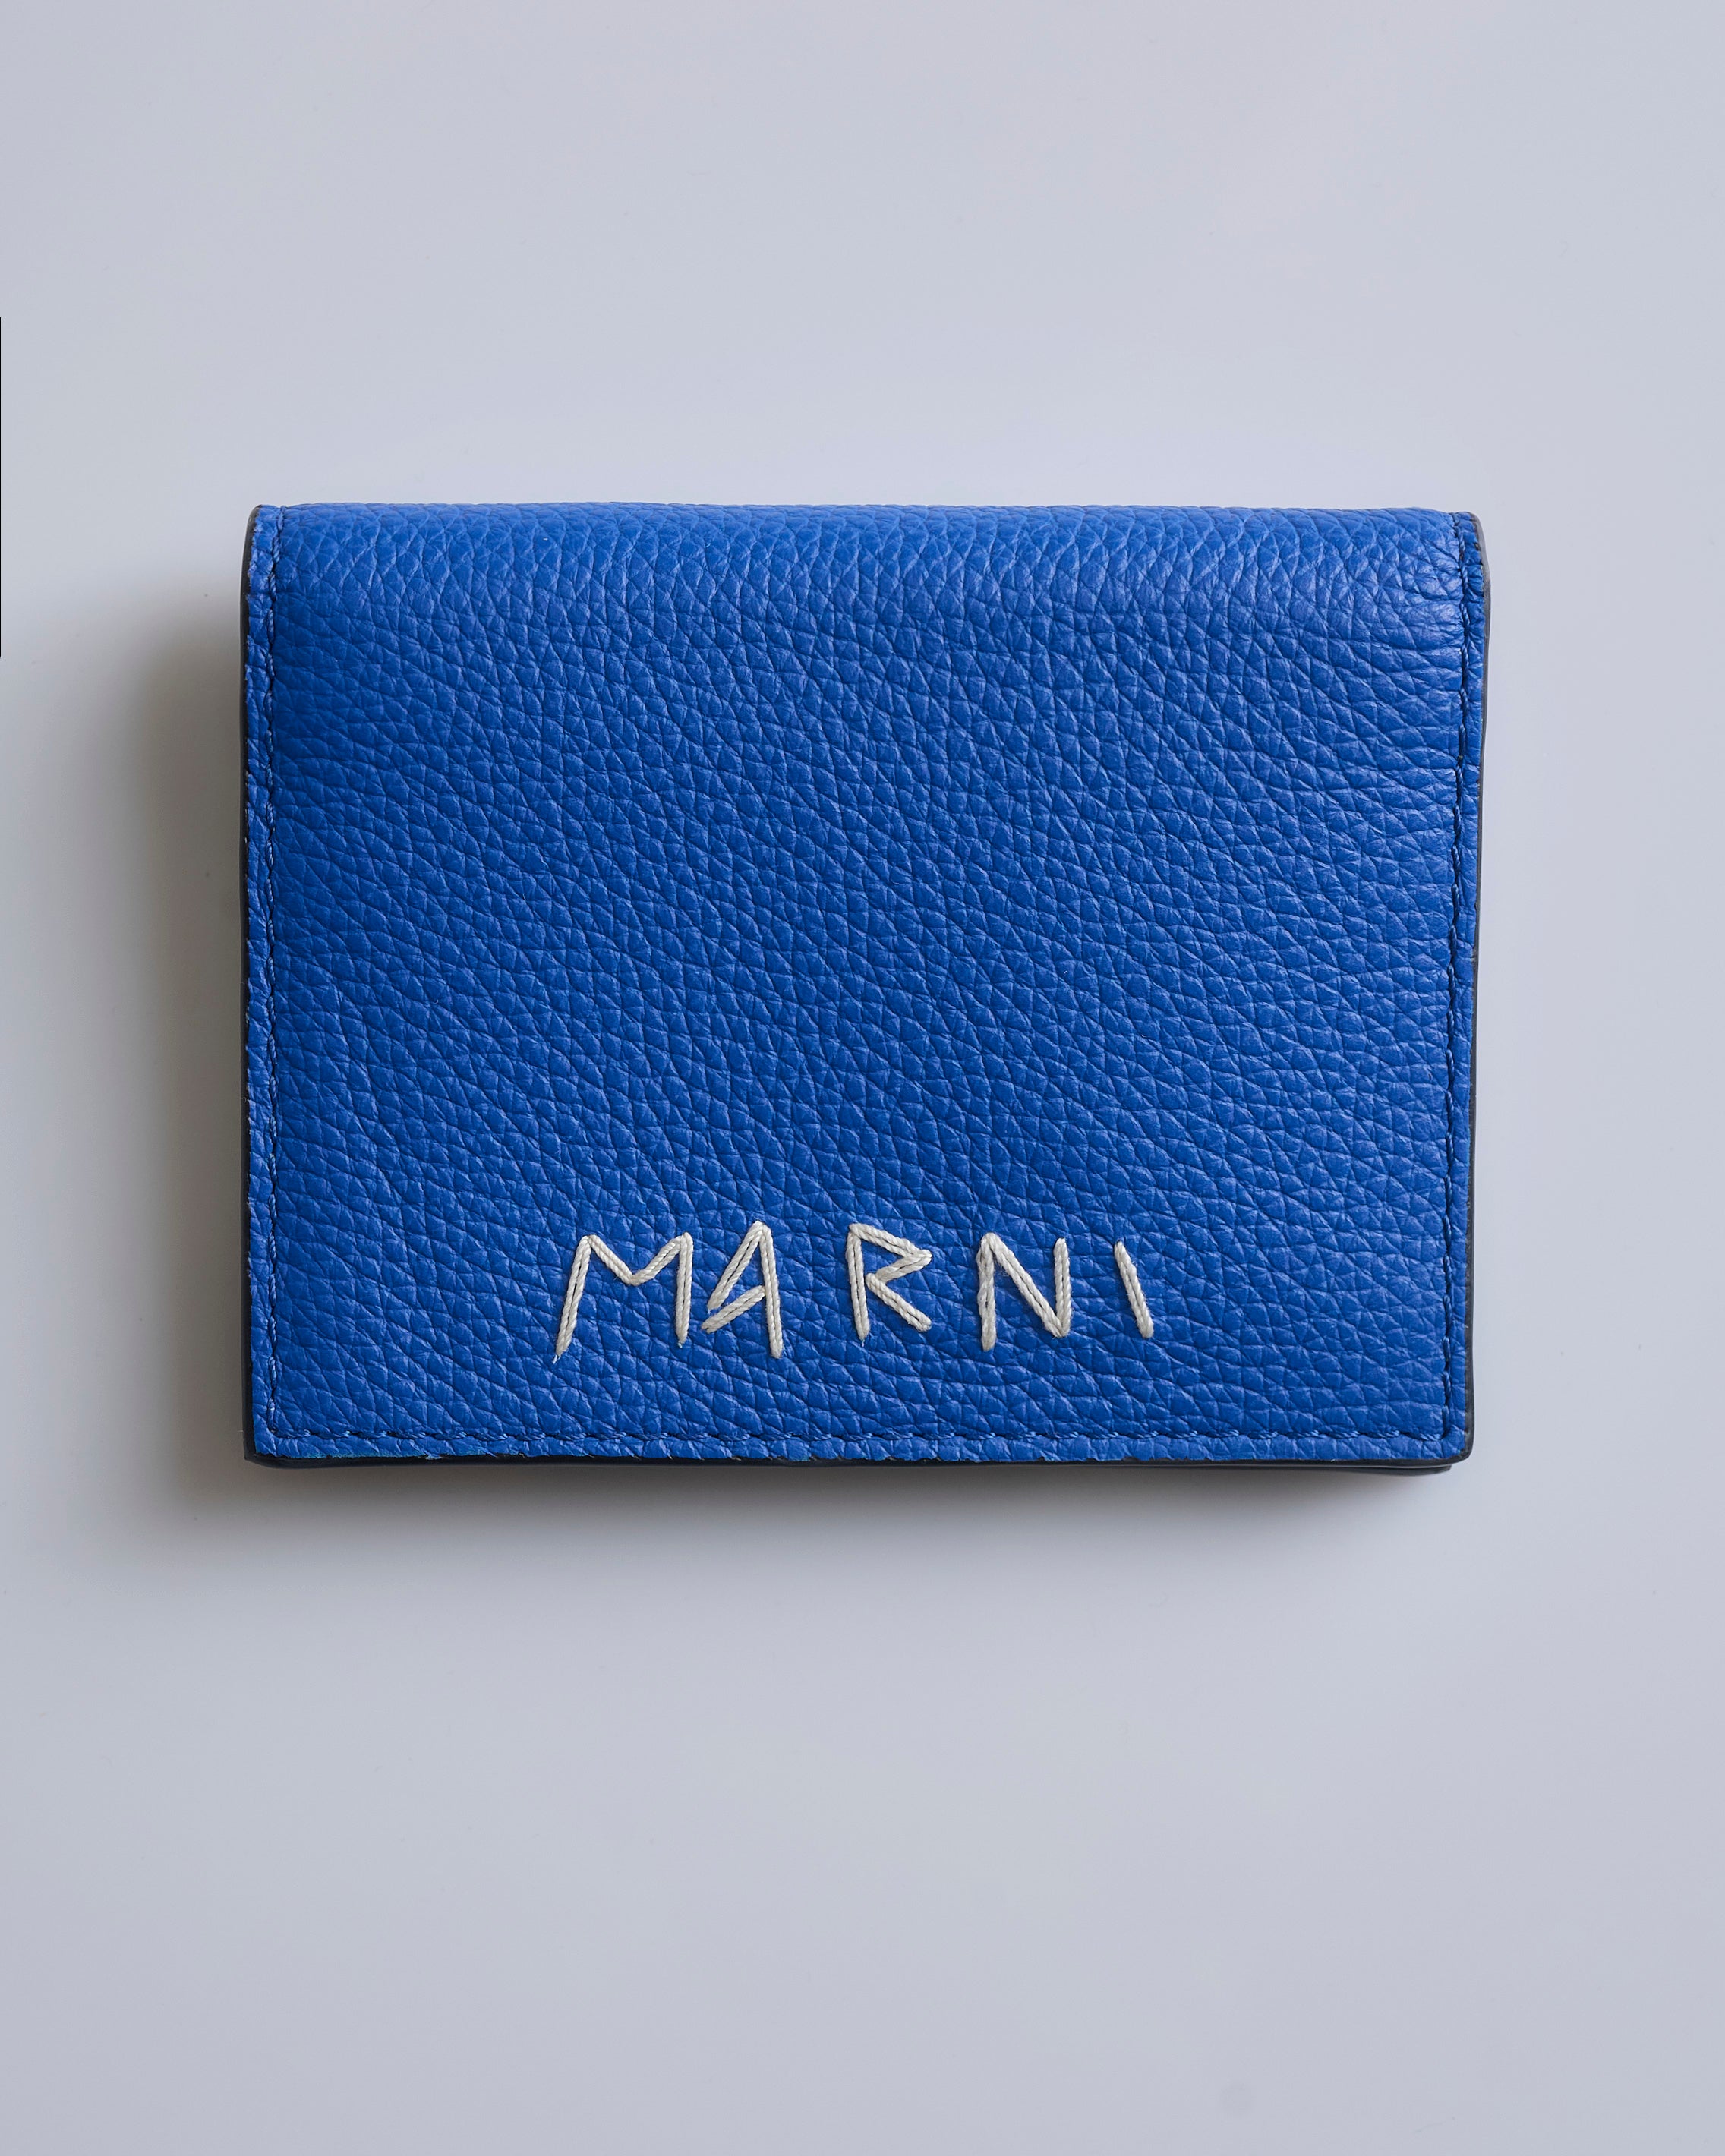 Marni 6 CC Card Holder Wallet Royal – LESS 17